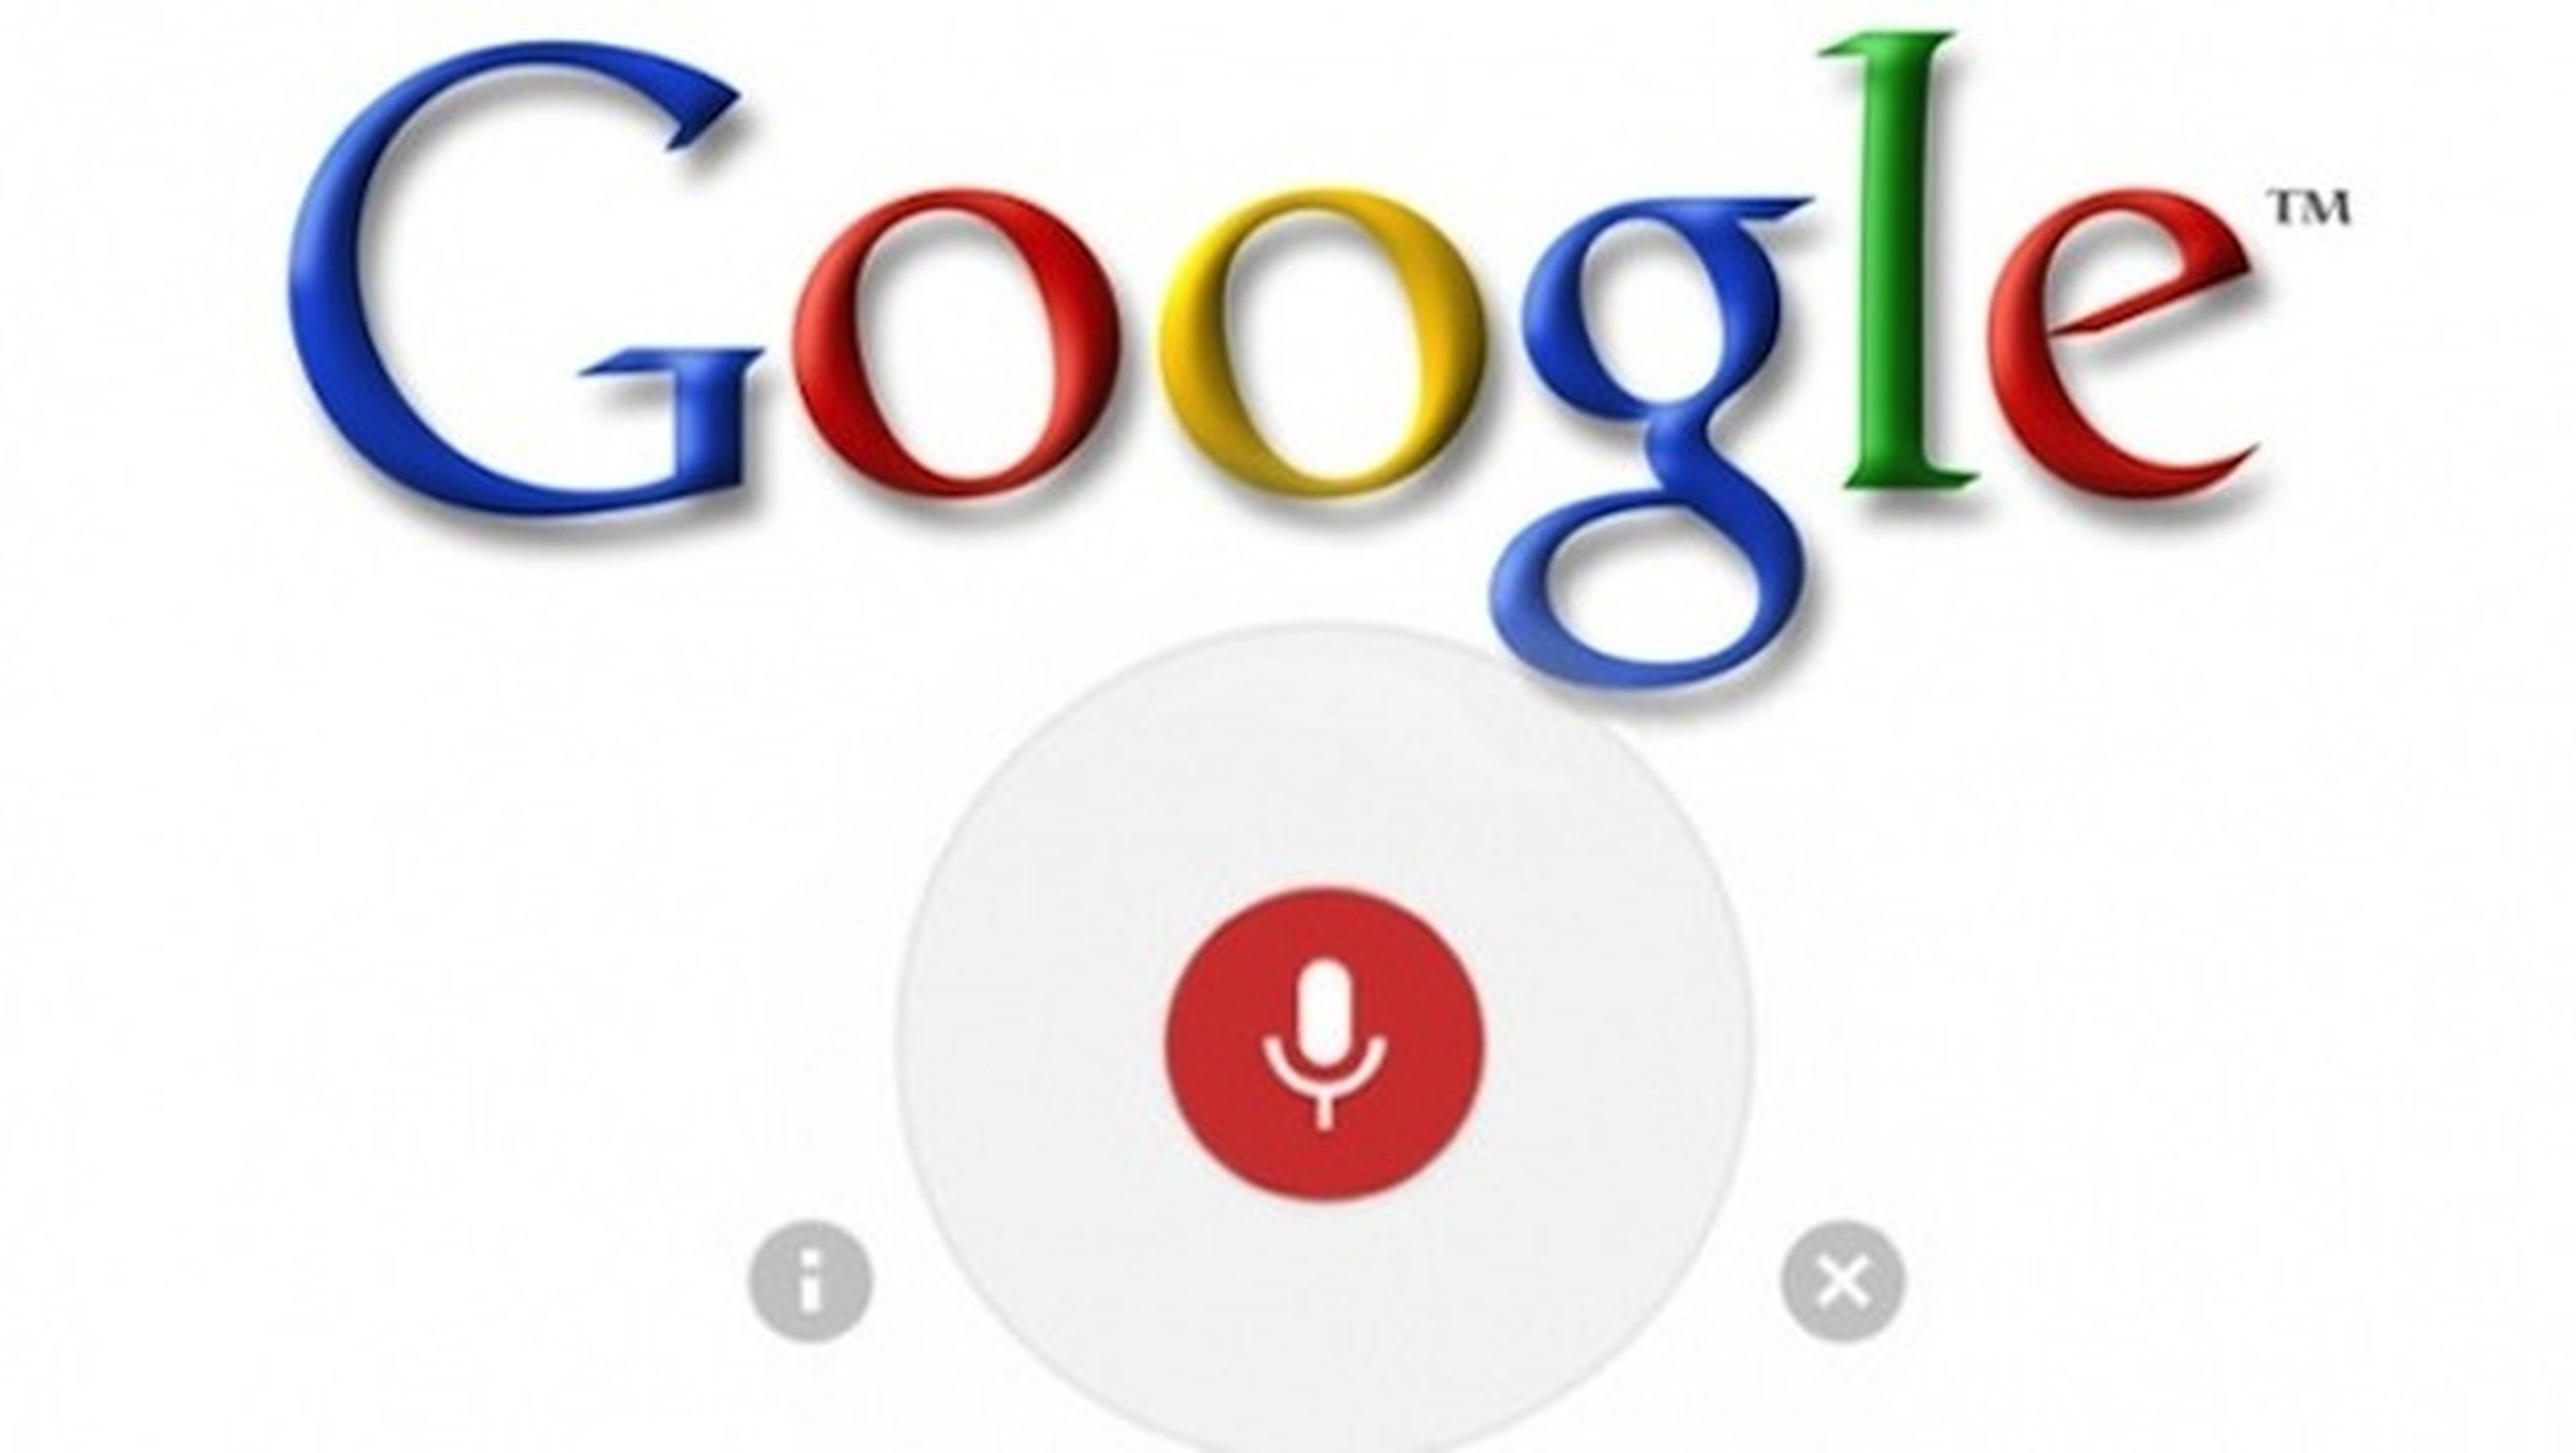 Nuevo plugin para Chrome activa búsquedas por voz diciendo "OK, Google"